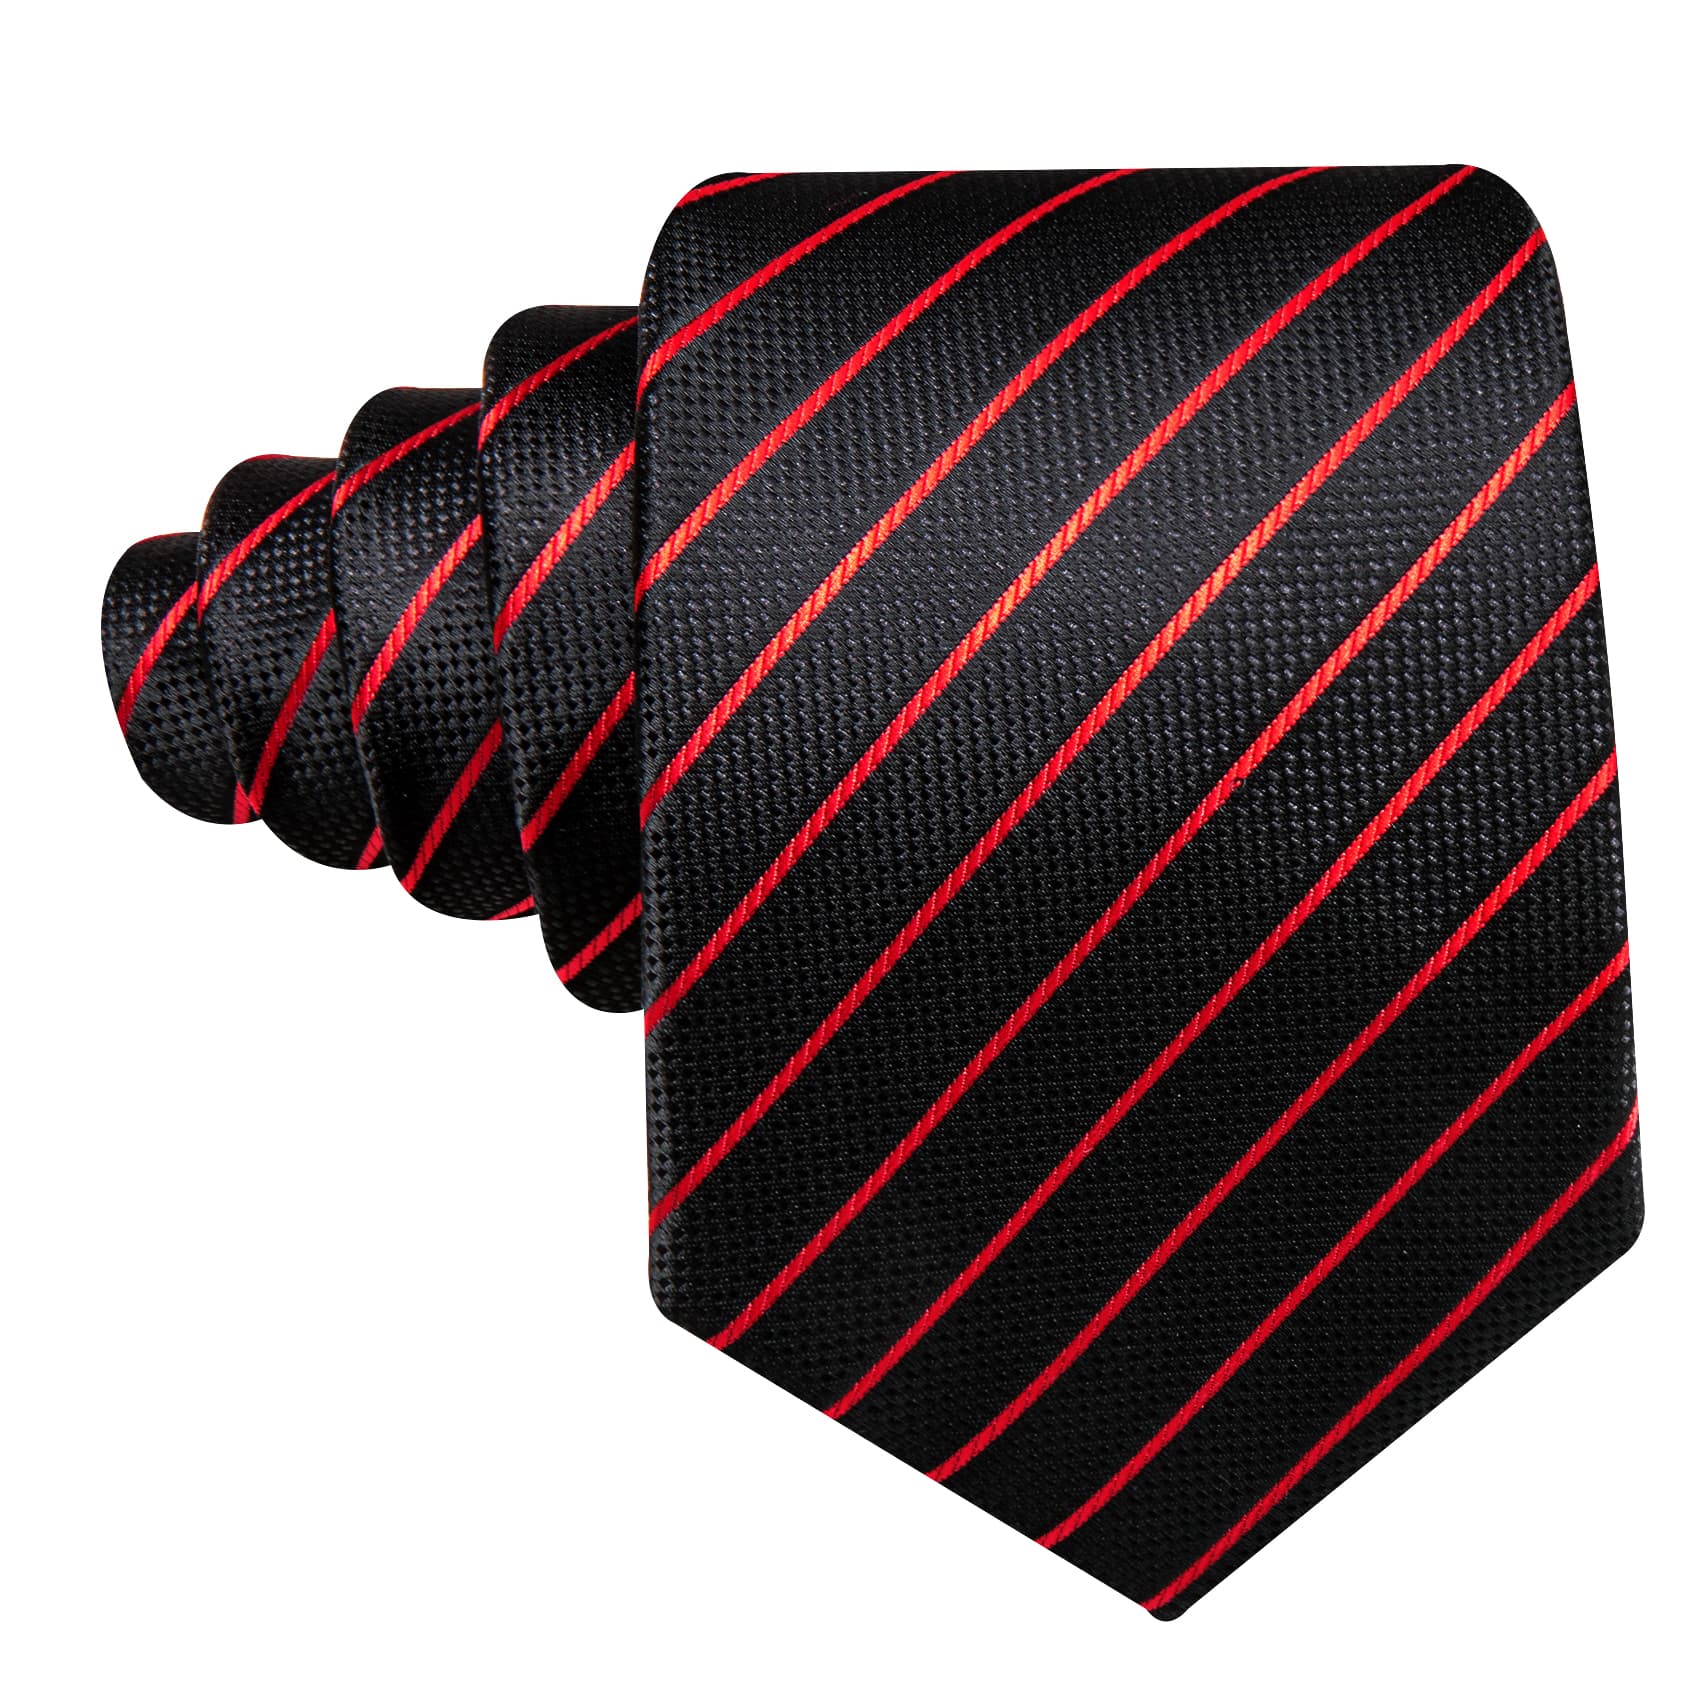  Black Tie Red Lines Striped Necktie Men's Tie Set